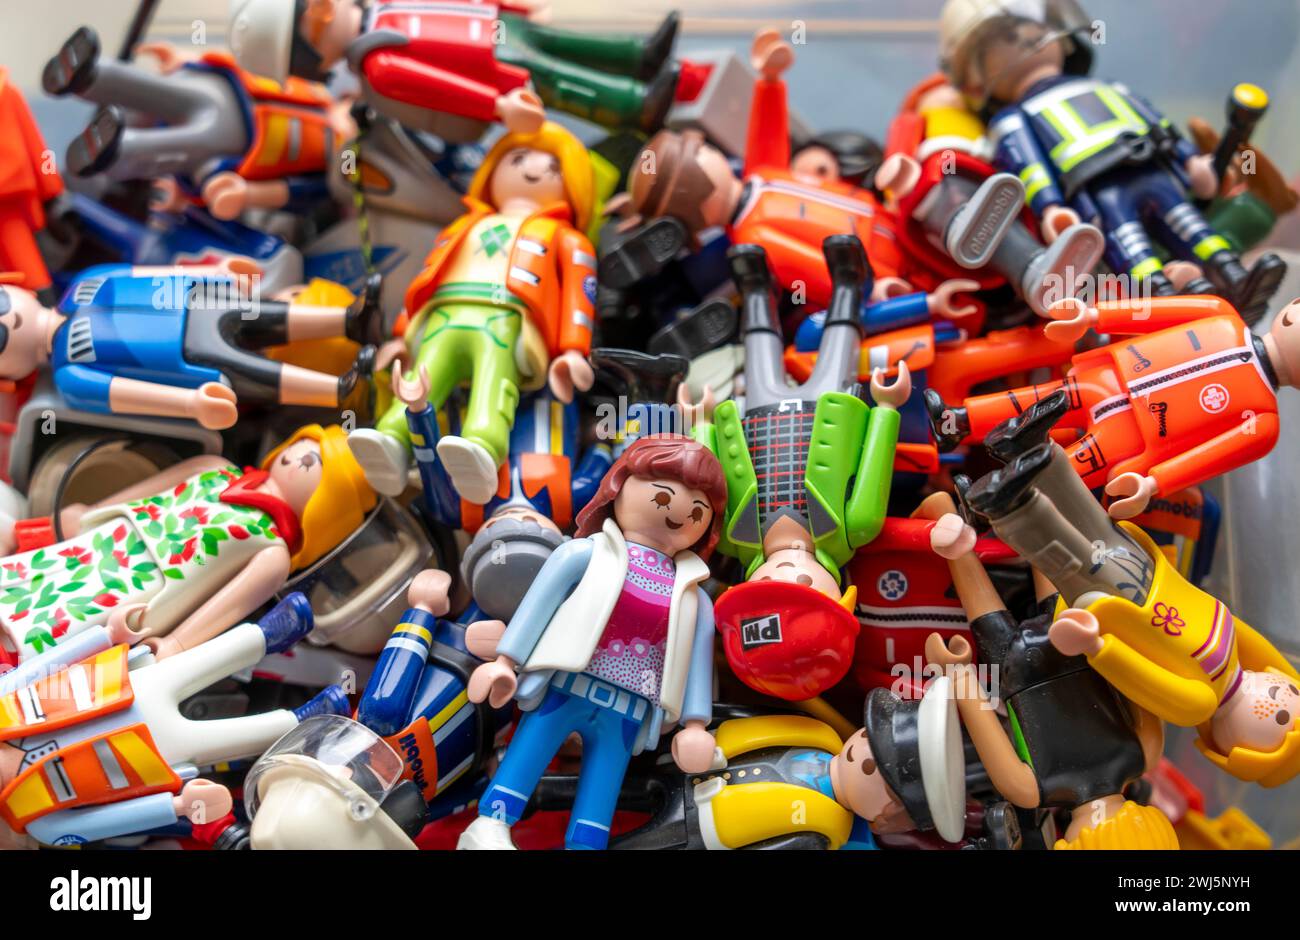 Tanti personaggi Playmobil diversi in una scatola, giocattoli di plastica, stanza dei bambini, Foto Stock